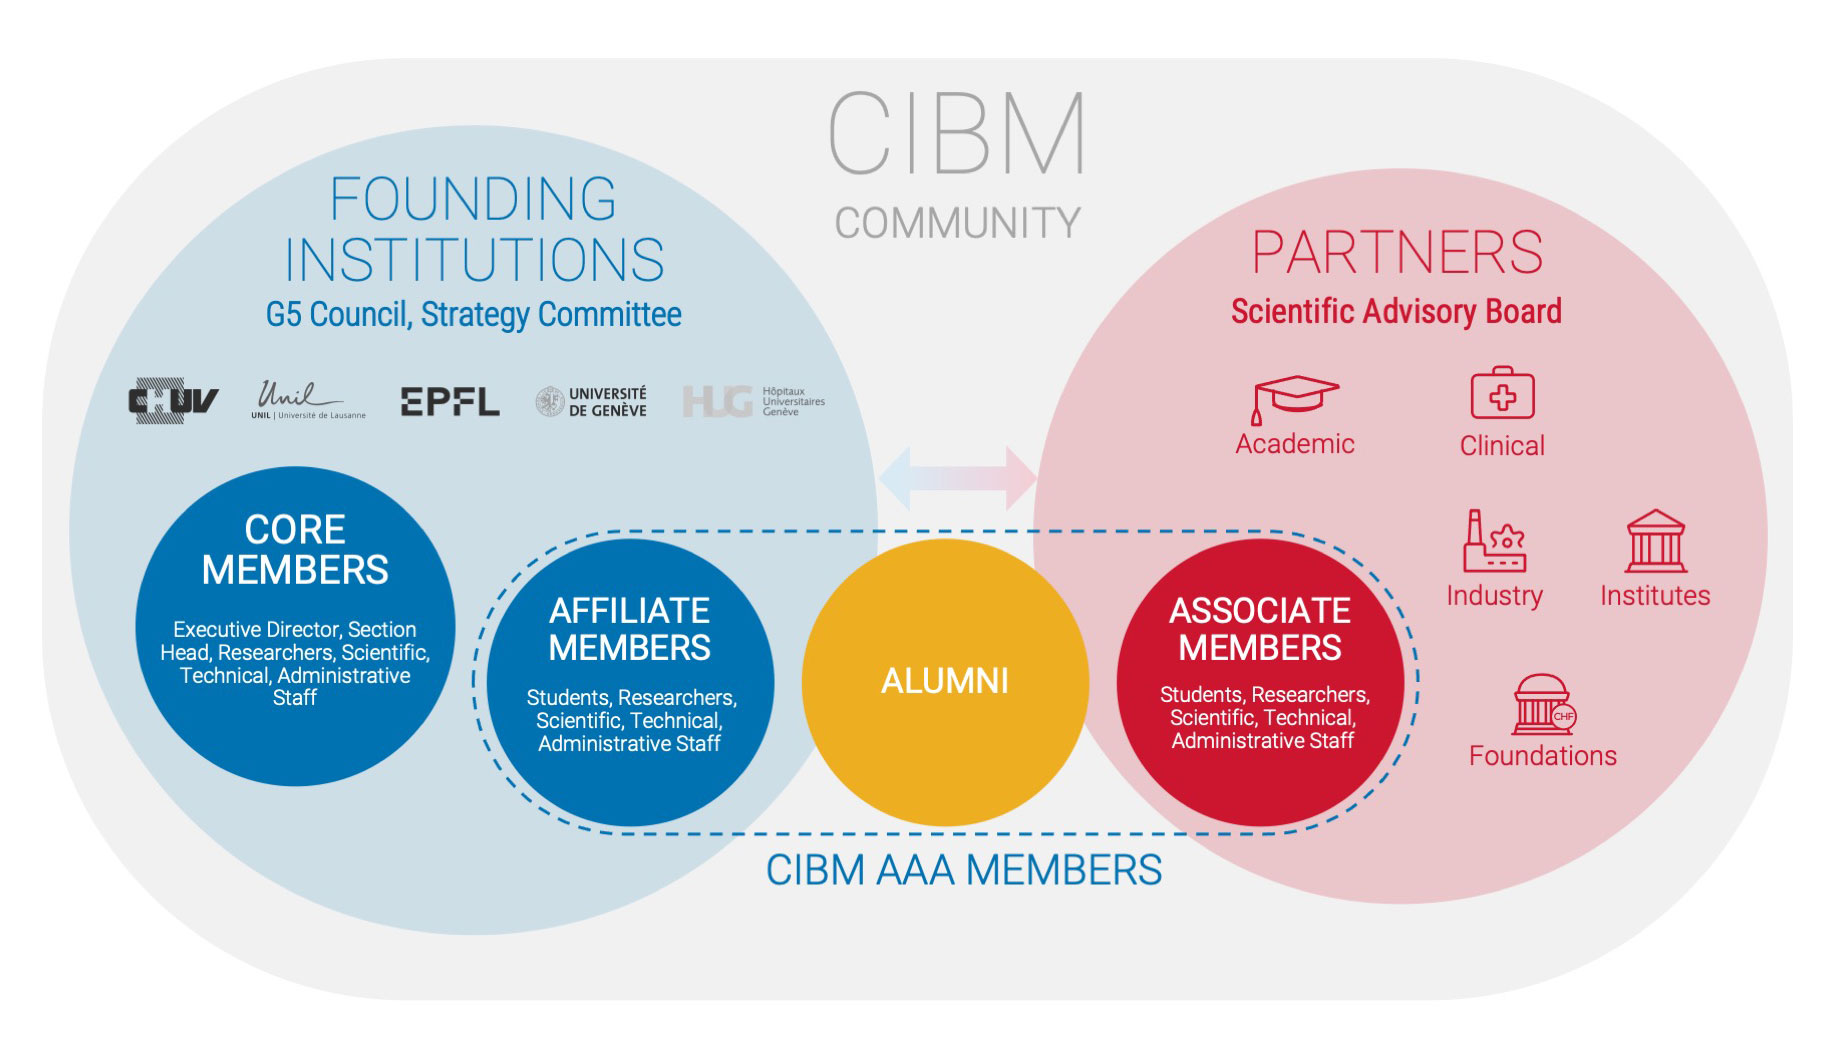 CIBM Community